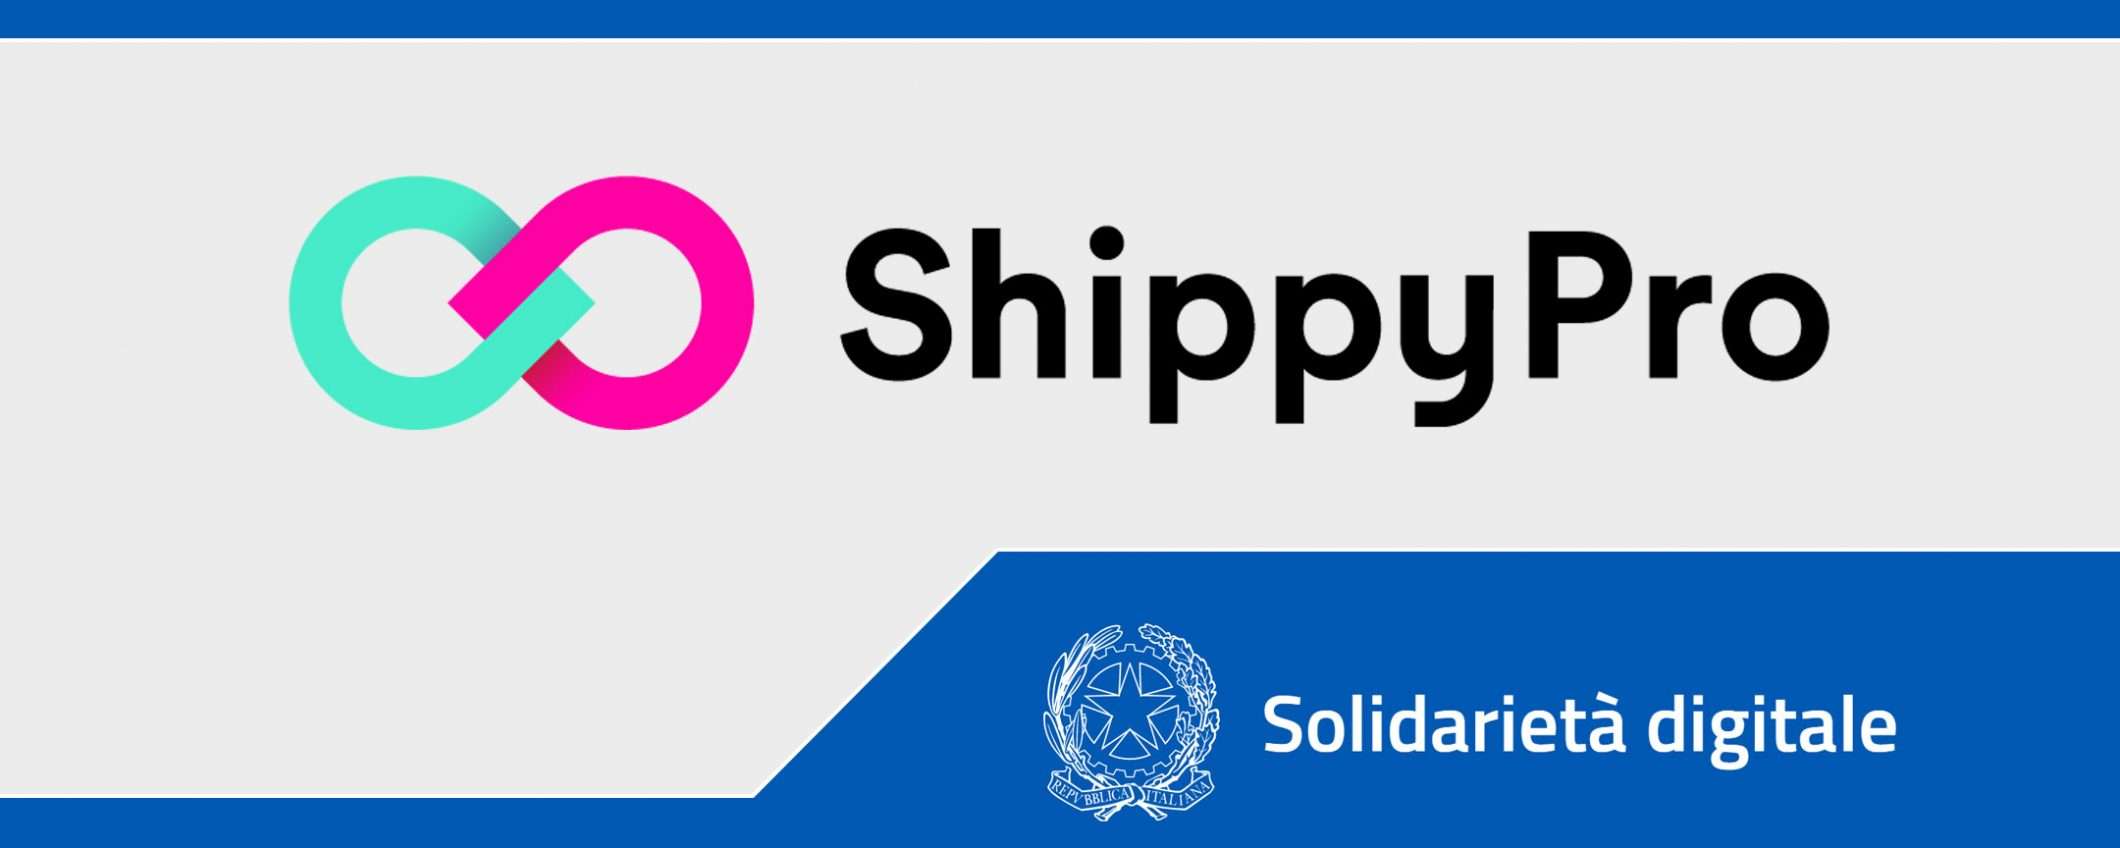 Solidarietà Digitale: ShippyPro per le spedizioni